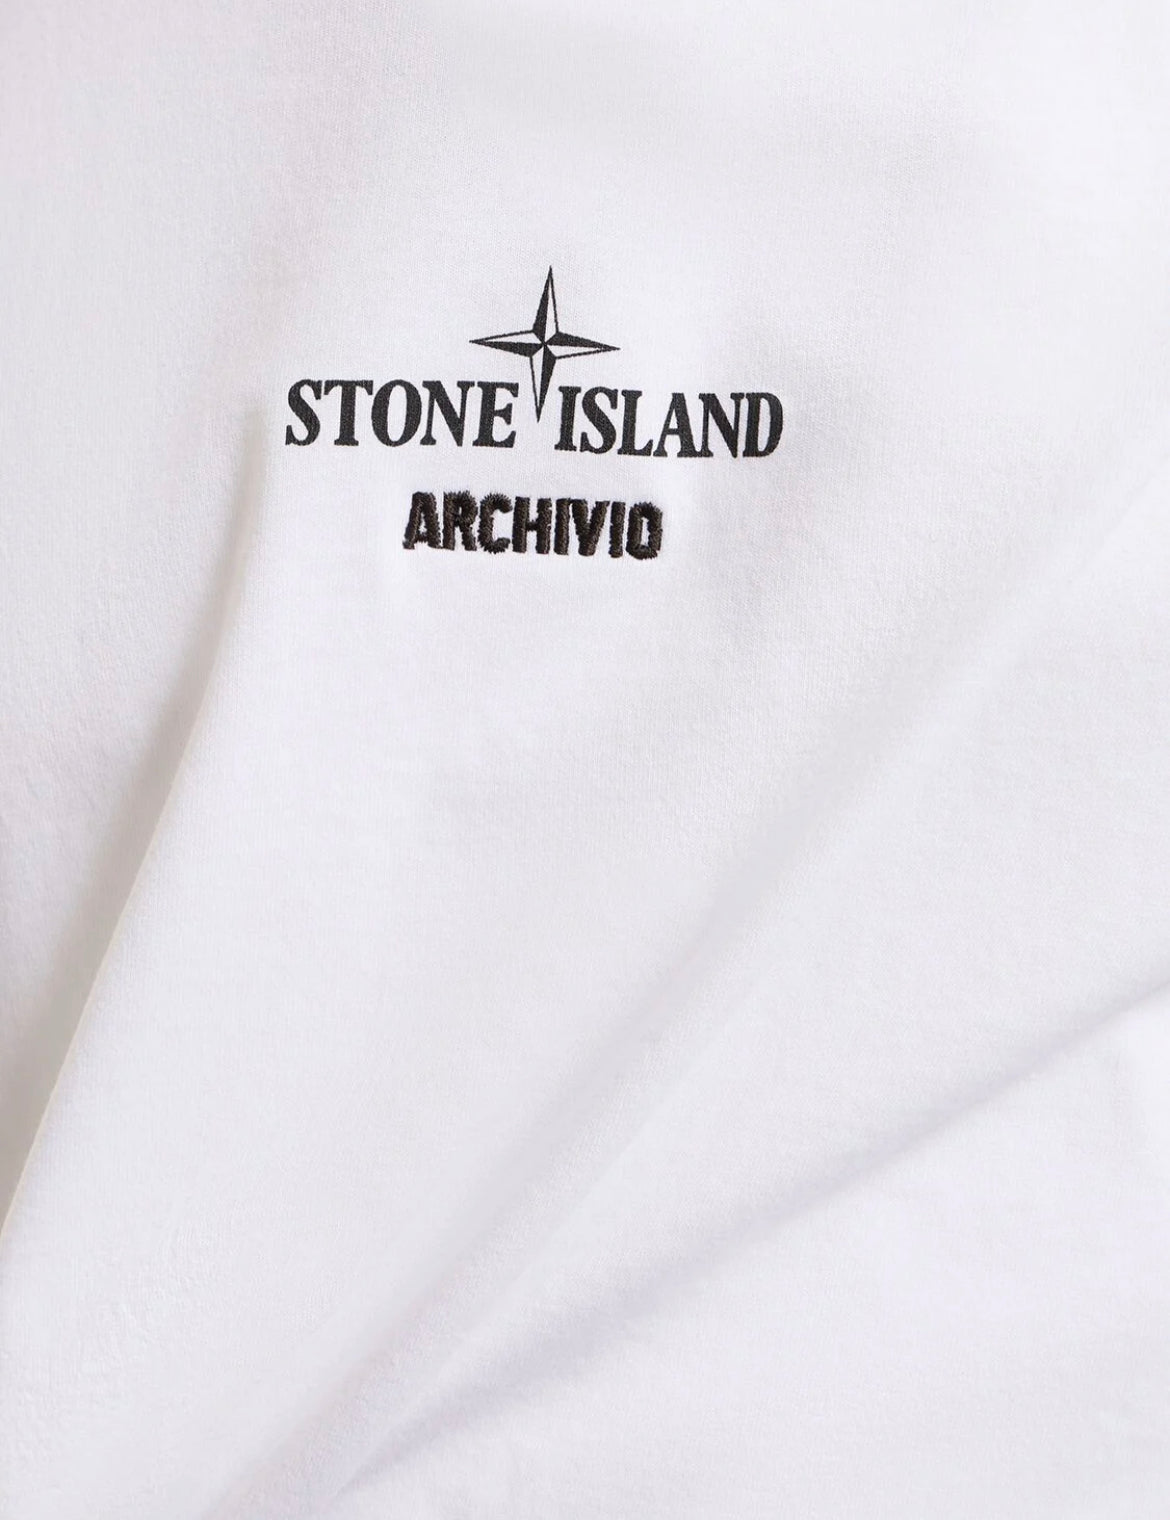 STONE ISLAND ARCHIVIO PRINT LOGO T-SHIRT - WHITE